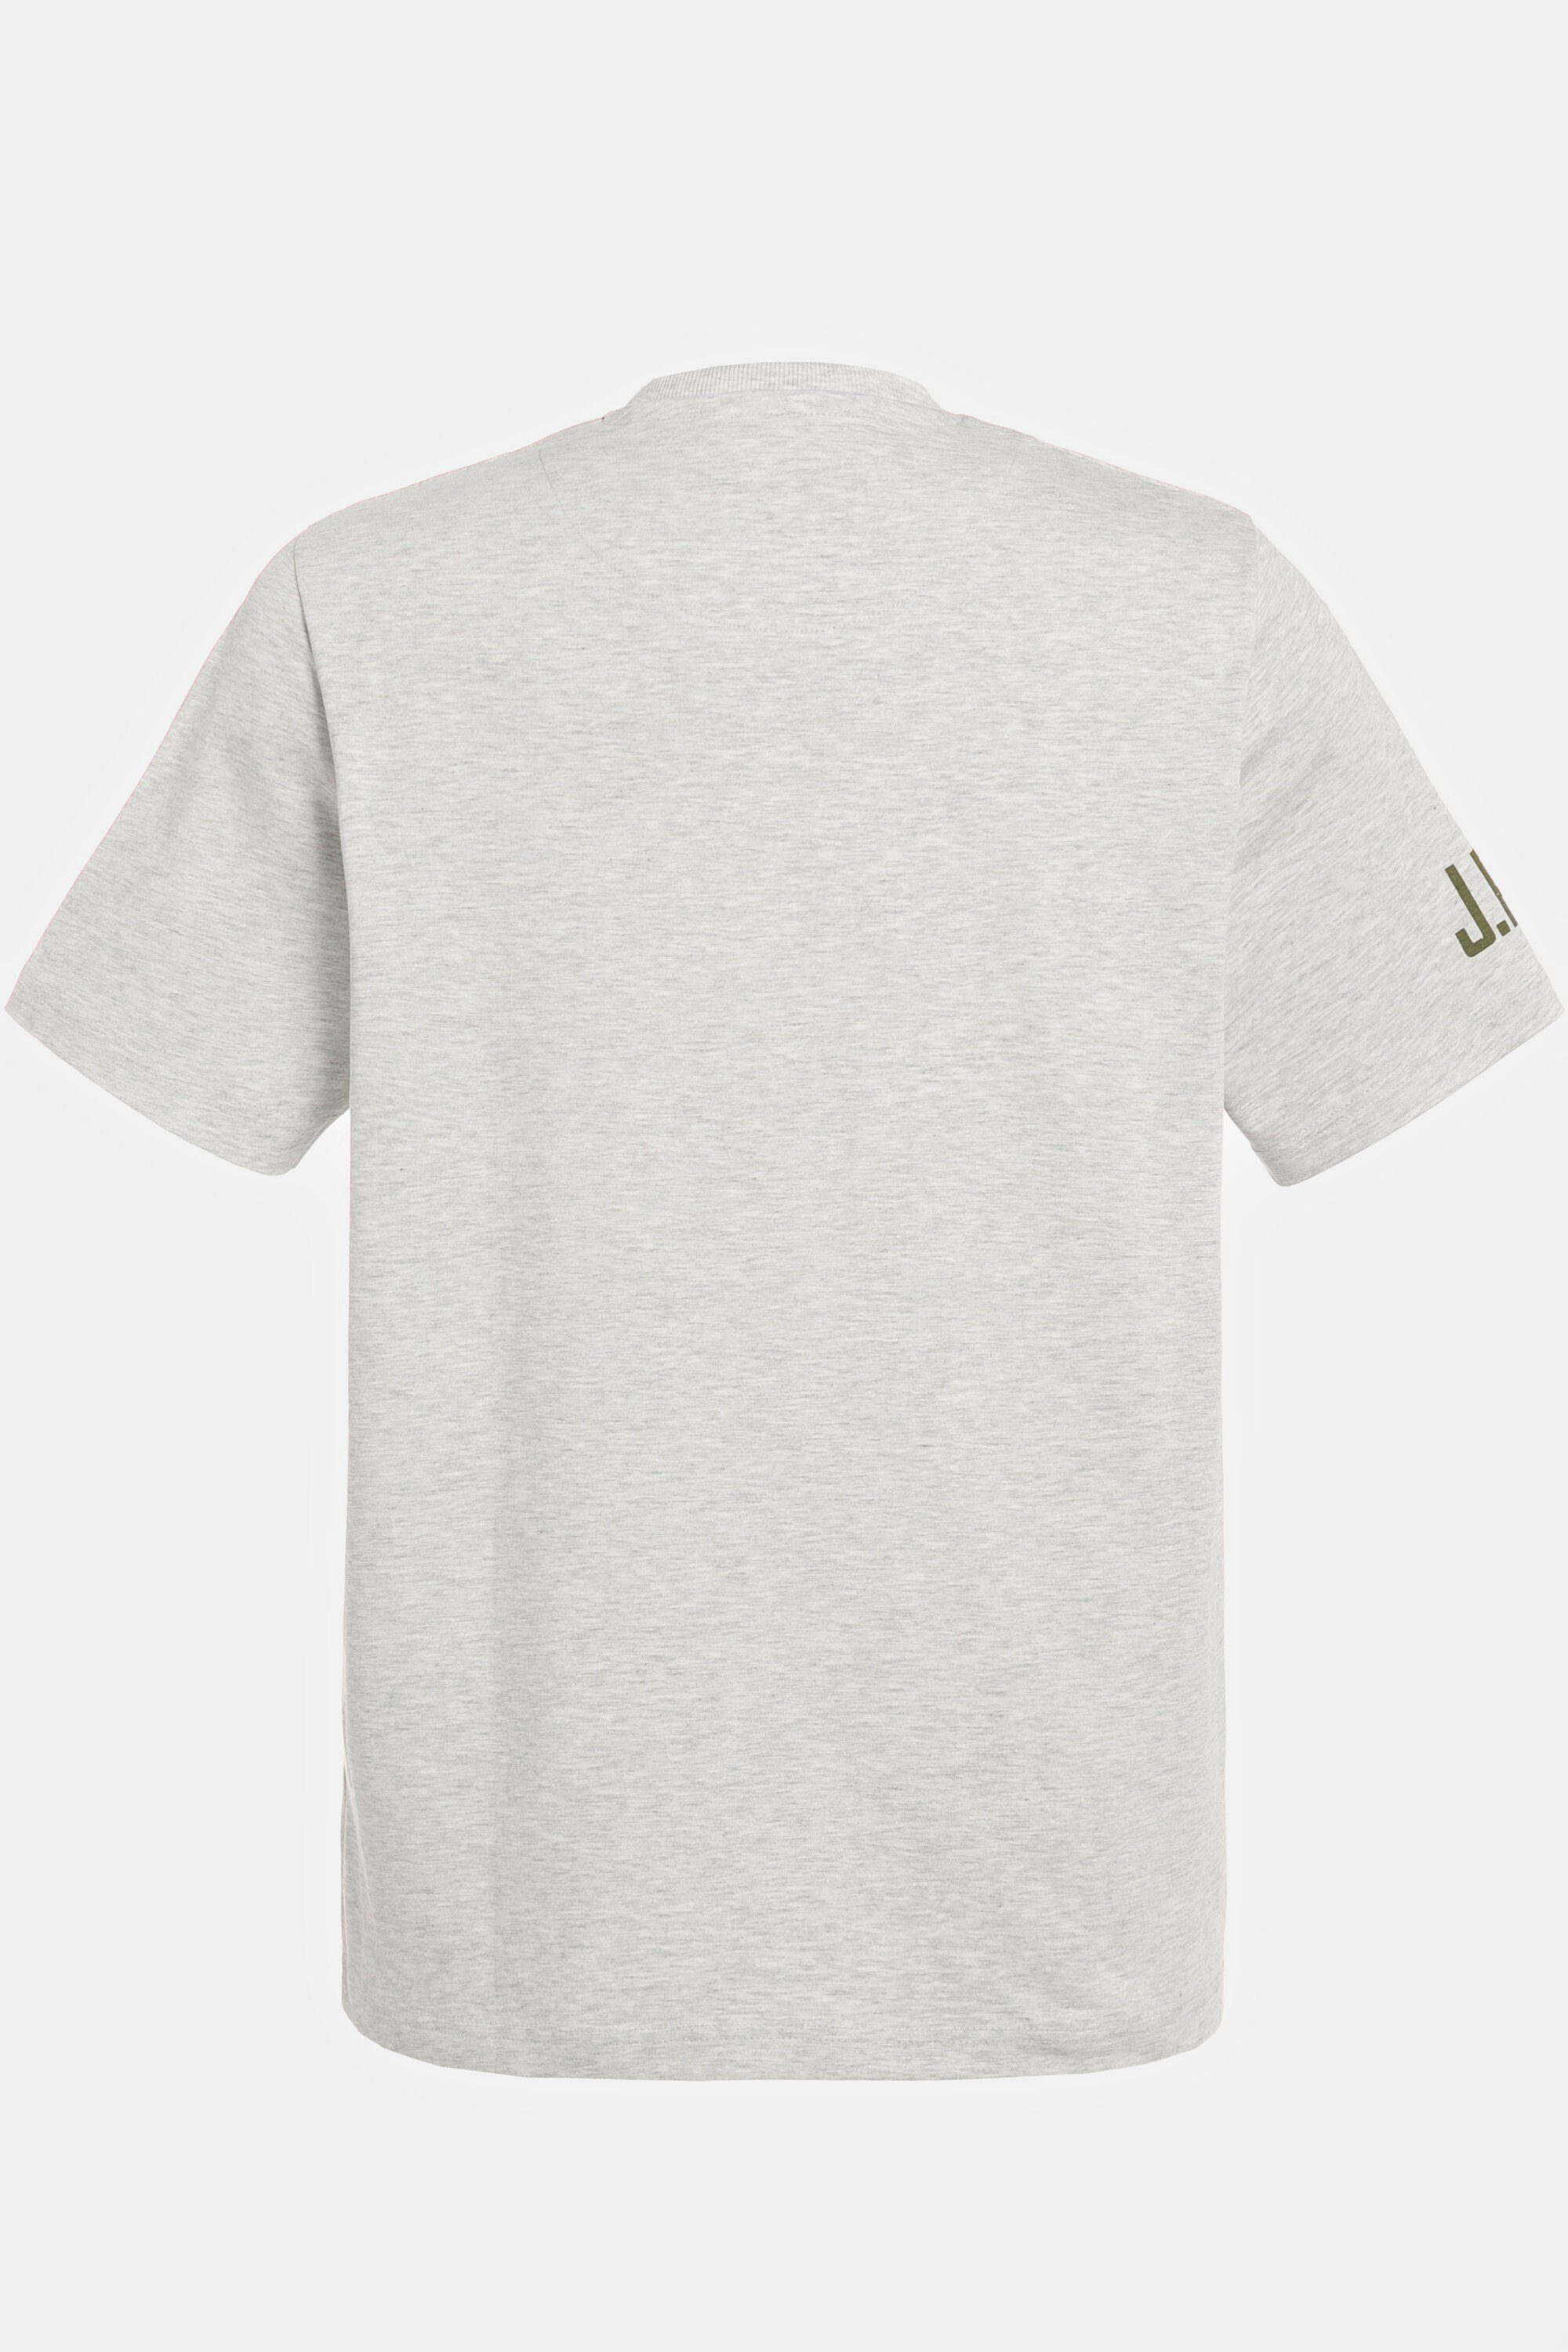 Halbarm Print melierter Jersey JP1880 T-Shirt T-Shirt